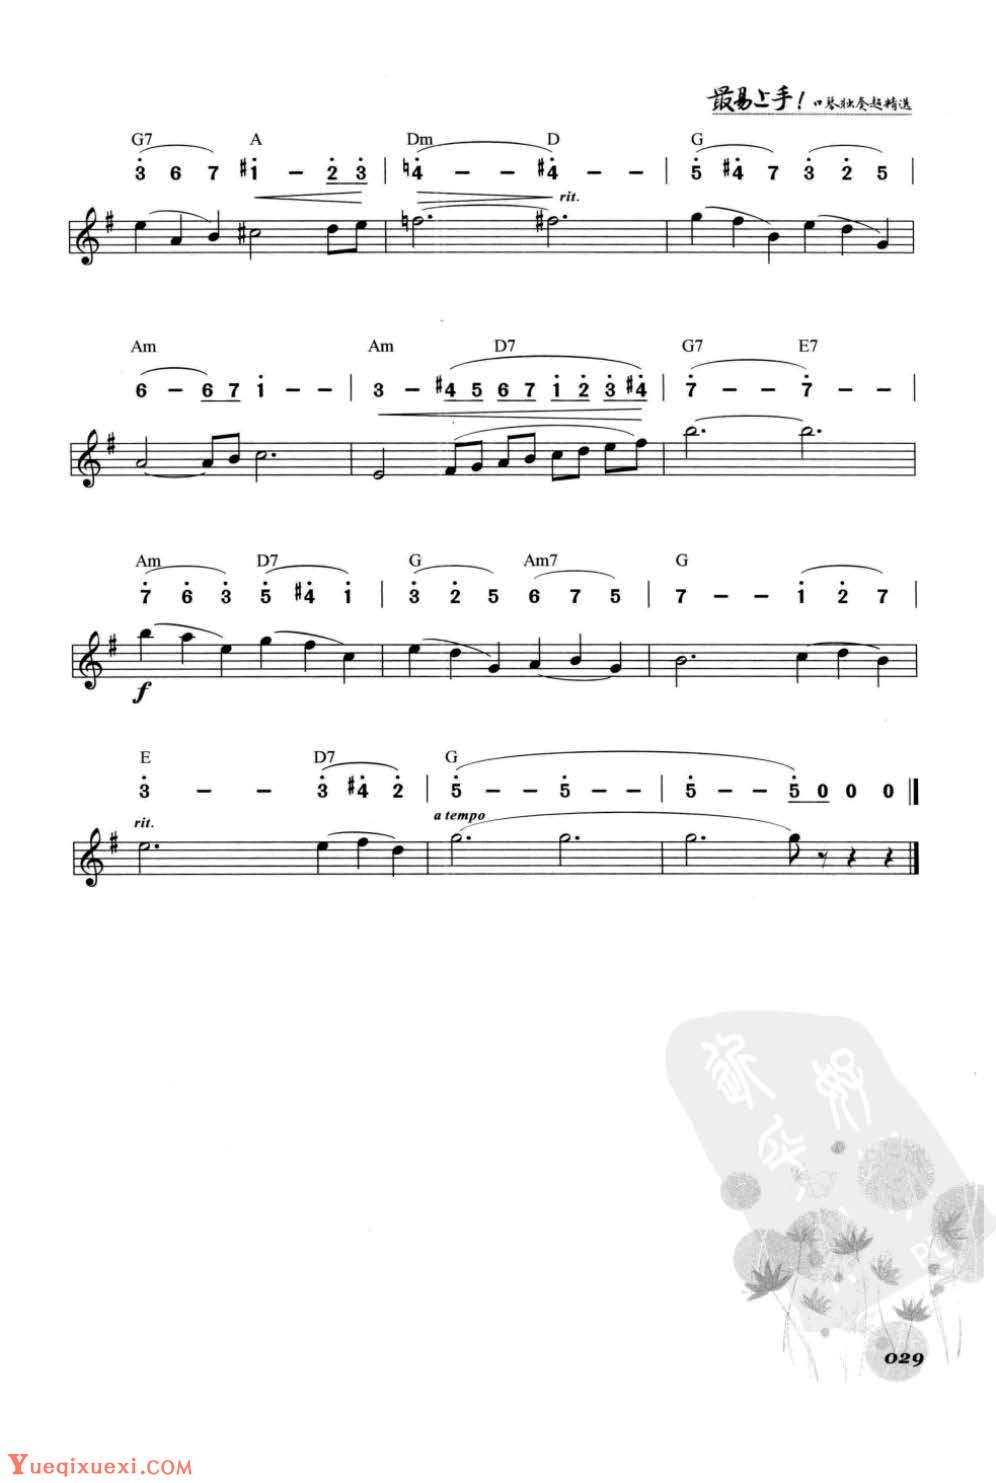 口琴古典名曲《天鹅》简谱与五线谱对照